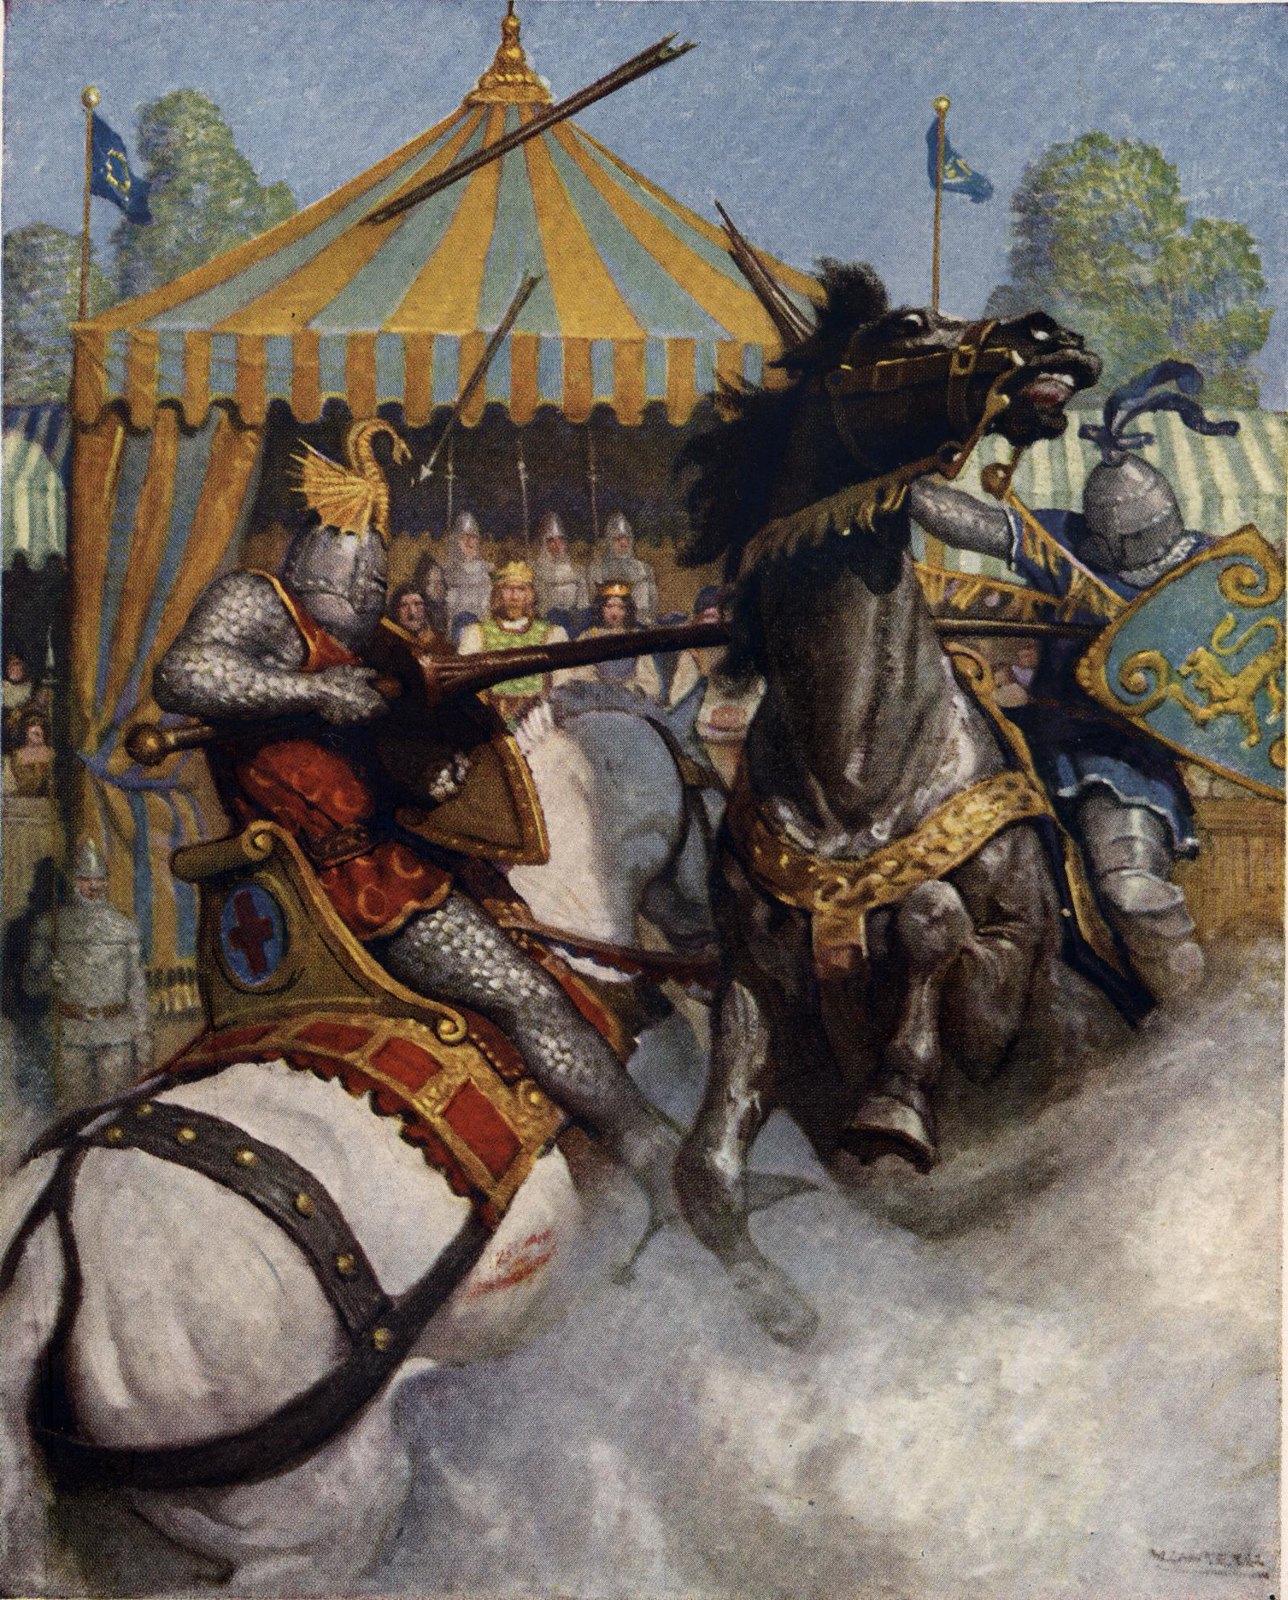 Illustration from Boys King Arthur by NC Wyeth